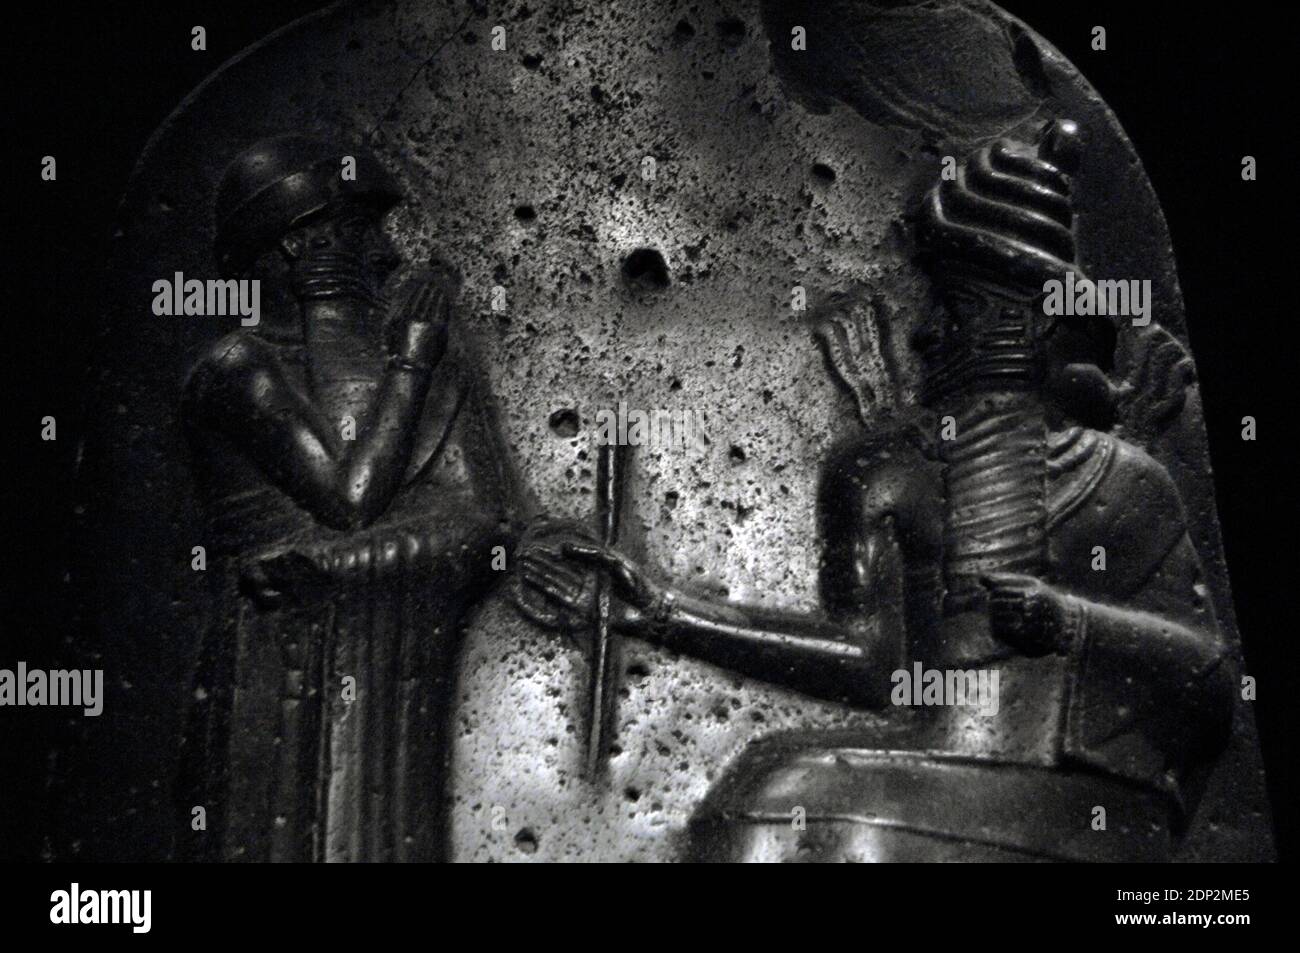 Codice di legge di Hammurabi, re di Babilonia. Stele di basalto, eretto dal re Hammurabi di Babilonia (1792-1750 a.C.). Dettaglio del rilievo raffigurante Hammurabi (in piedi) che riceve la sua investitura da Shamash, dio della giustizia. Museo del Louvre. Parigi, Francia. Foto Stock